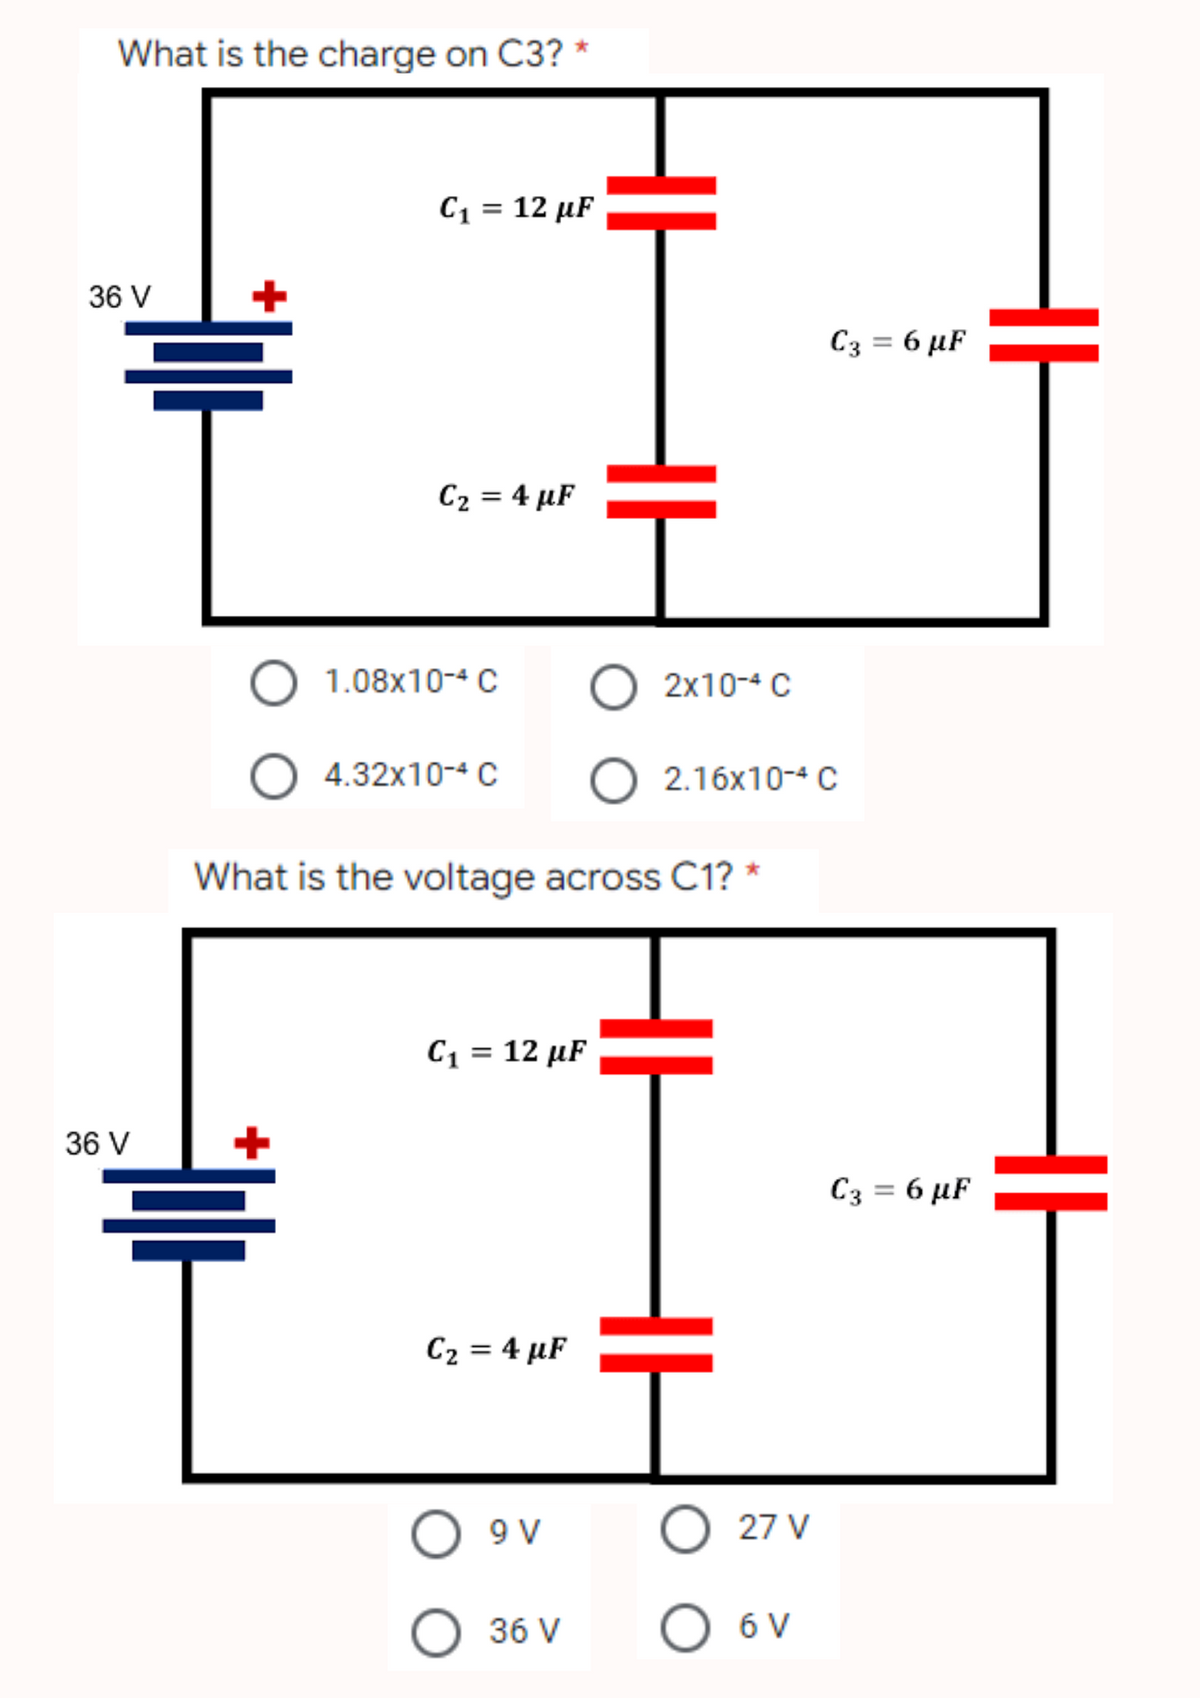 What is the charge on C3?
C₁ = 12 µF
36 V
C₂ = 4 µF
36 V
O
1.08x10-4 C
O 2x10-4 C
O 4.32x10-4 C
What is the voltage across C1? *
C₁ = 12 µF
C₂ = 4 µF
T
09 9 V
O 36 V
2.16x10-4 C
HH
C3 = 6 µF
O 27 V
O 6 V
C3 = 6 µF